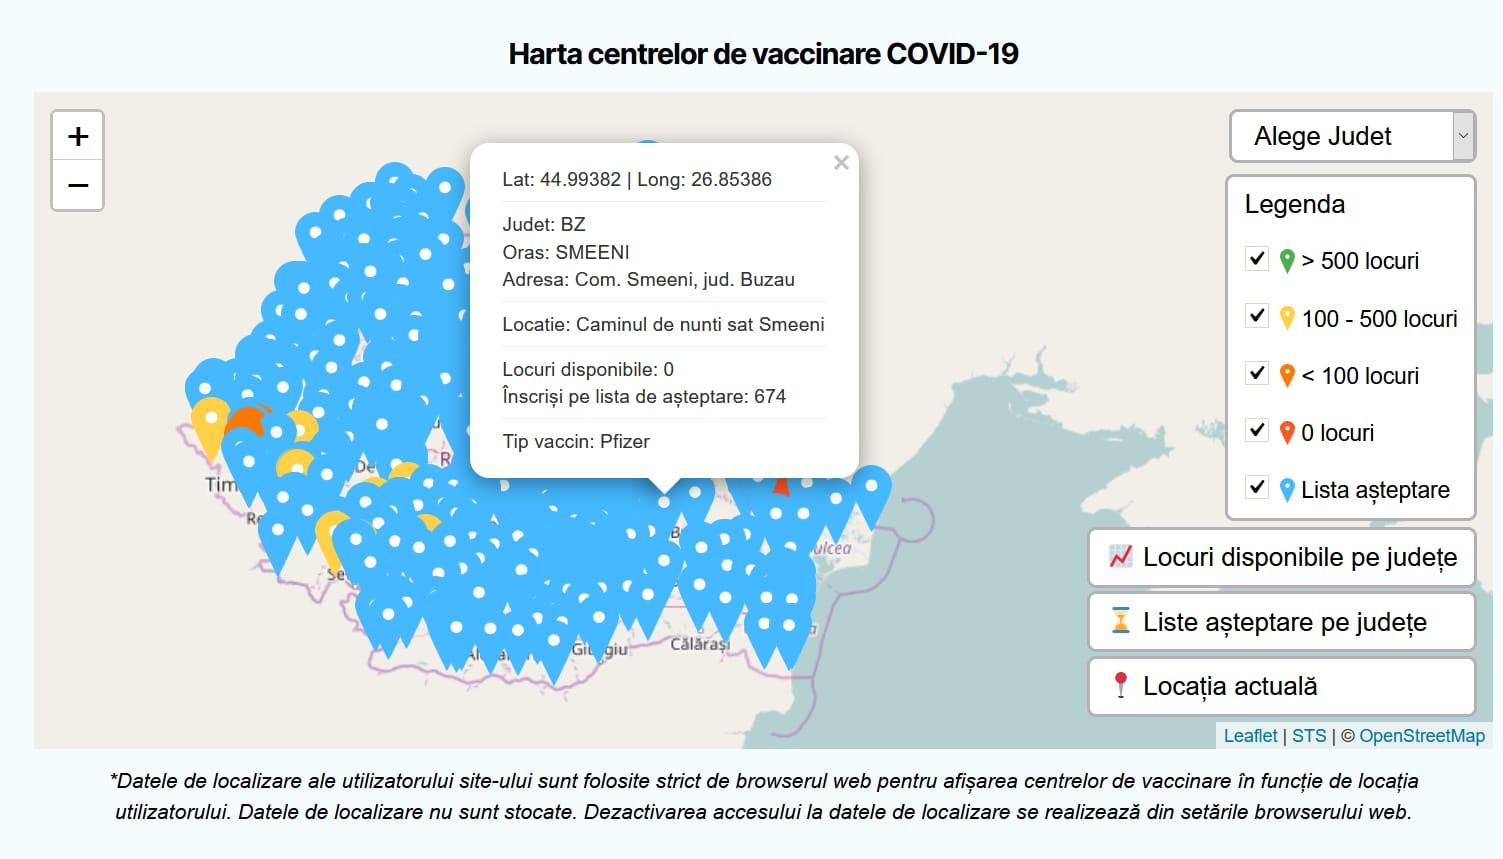 Harta centrelor pe tipuri de vaccin, disponibilă: pot fi văzute locurile libere